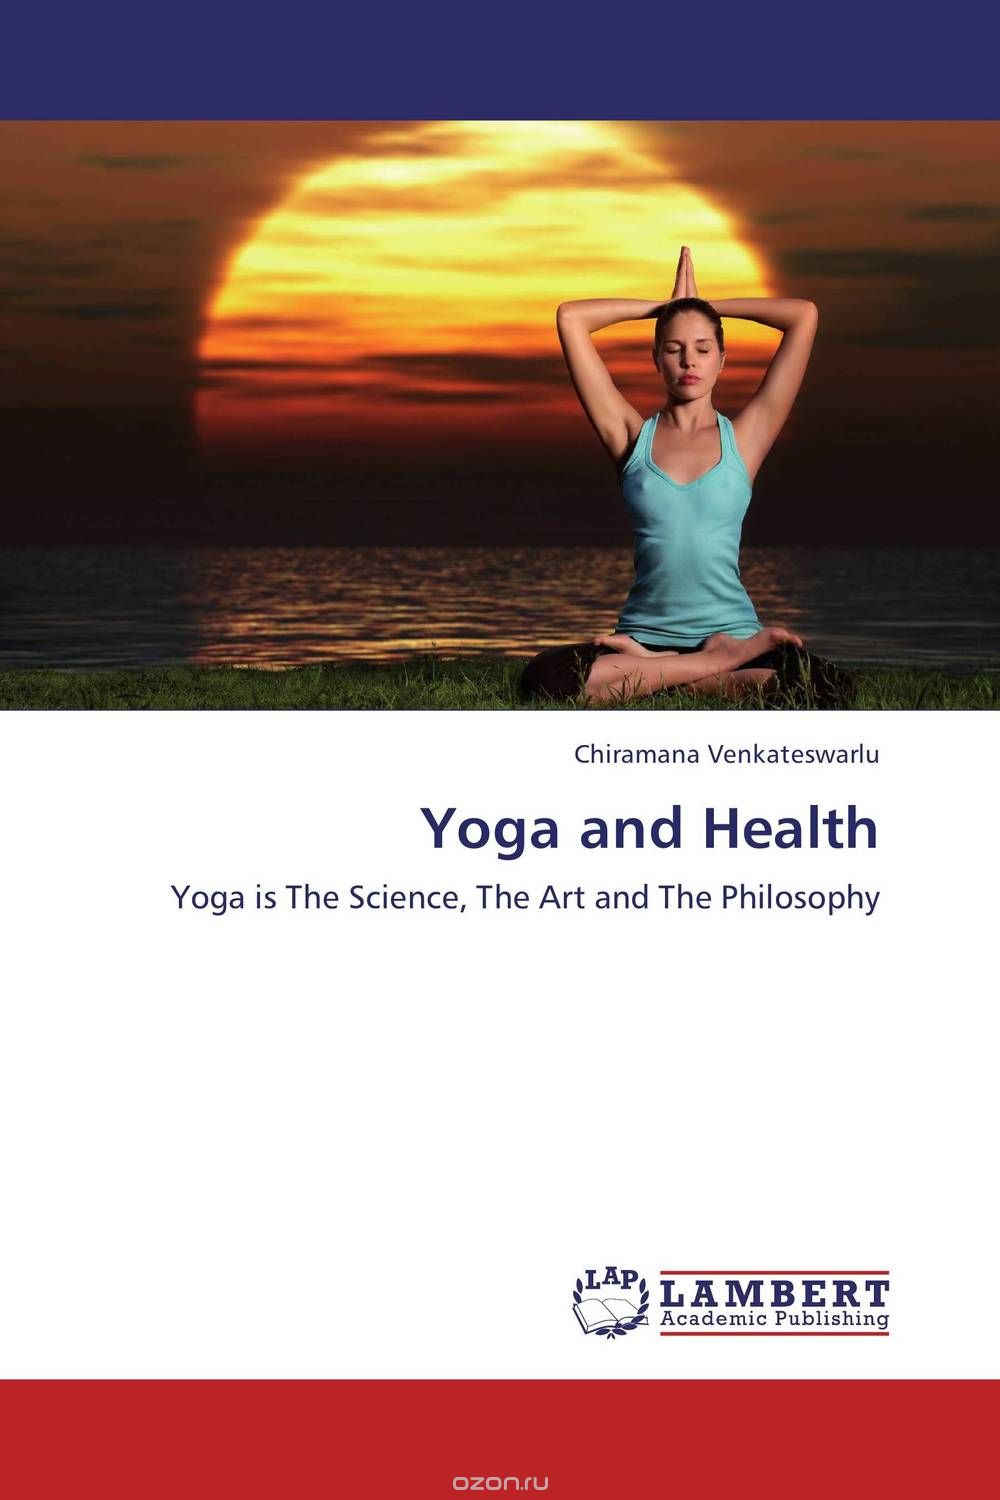 Скачать книгу "Yoga and Health"